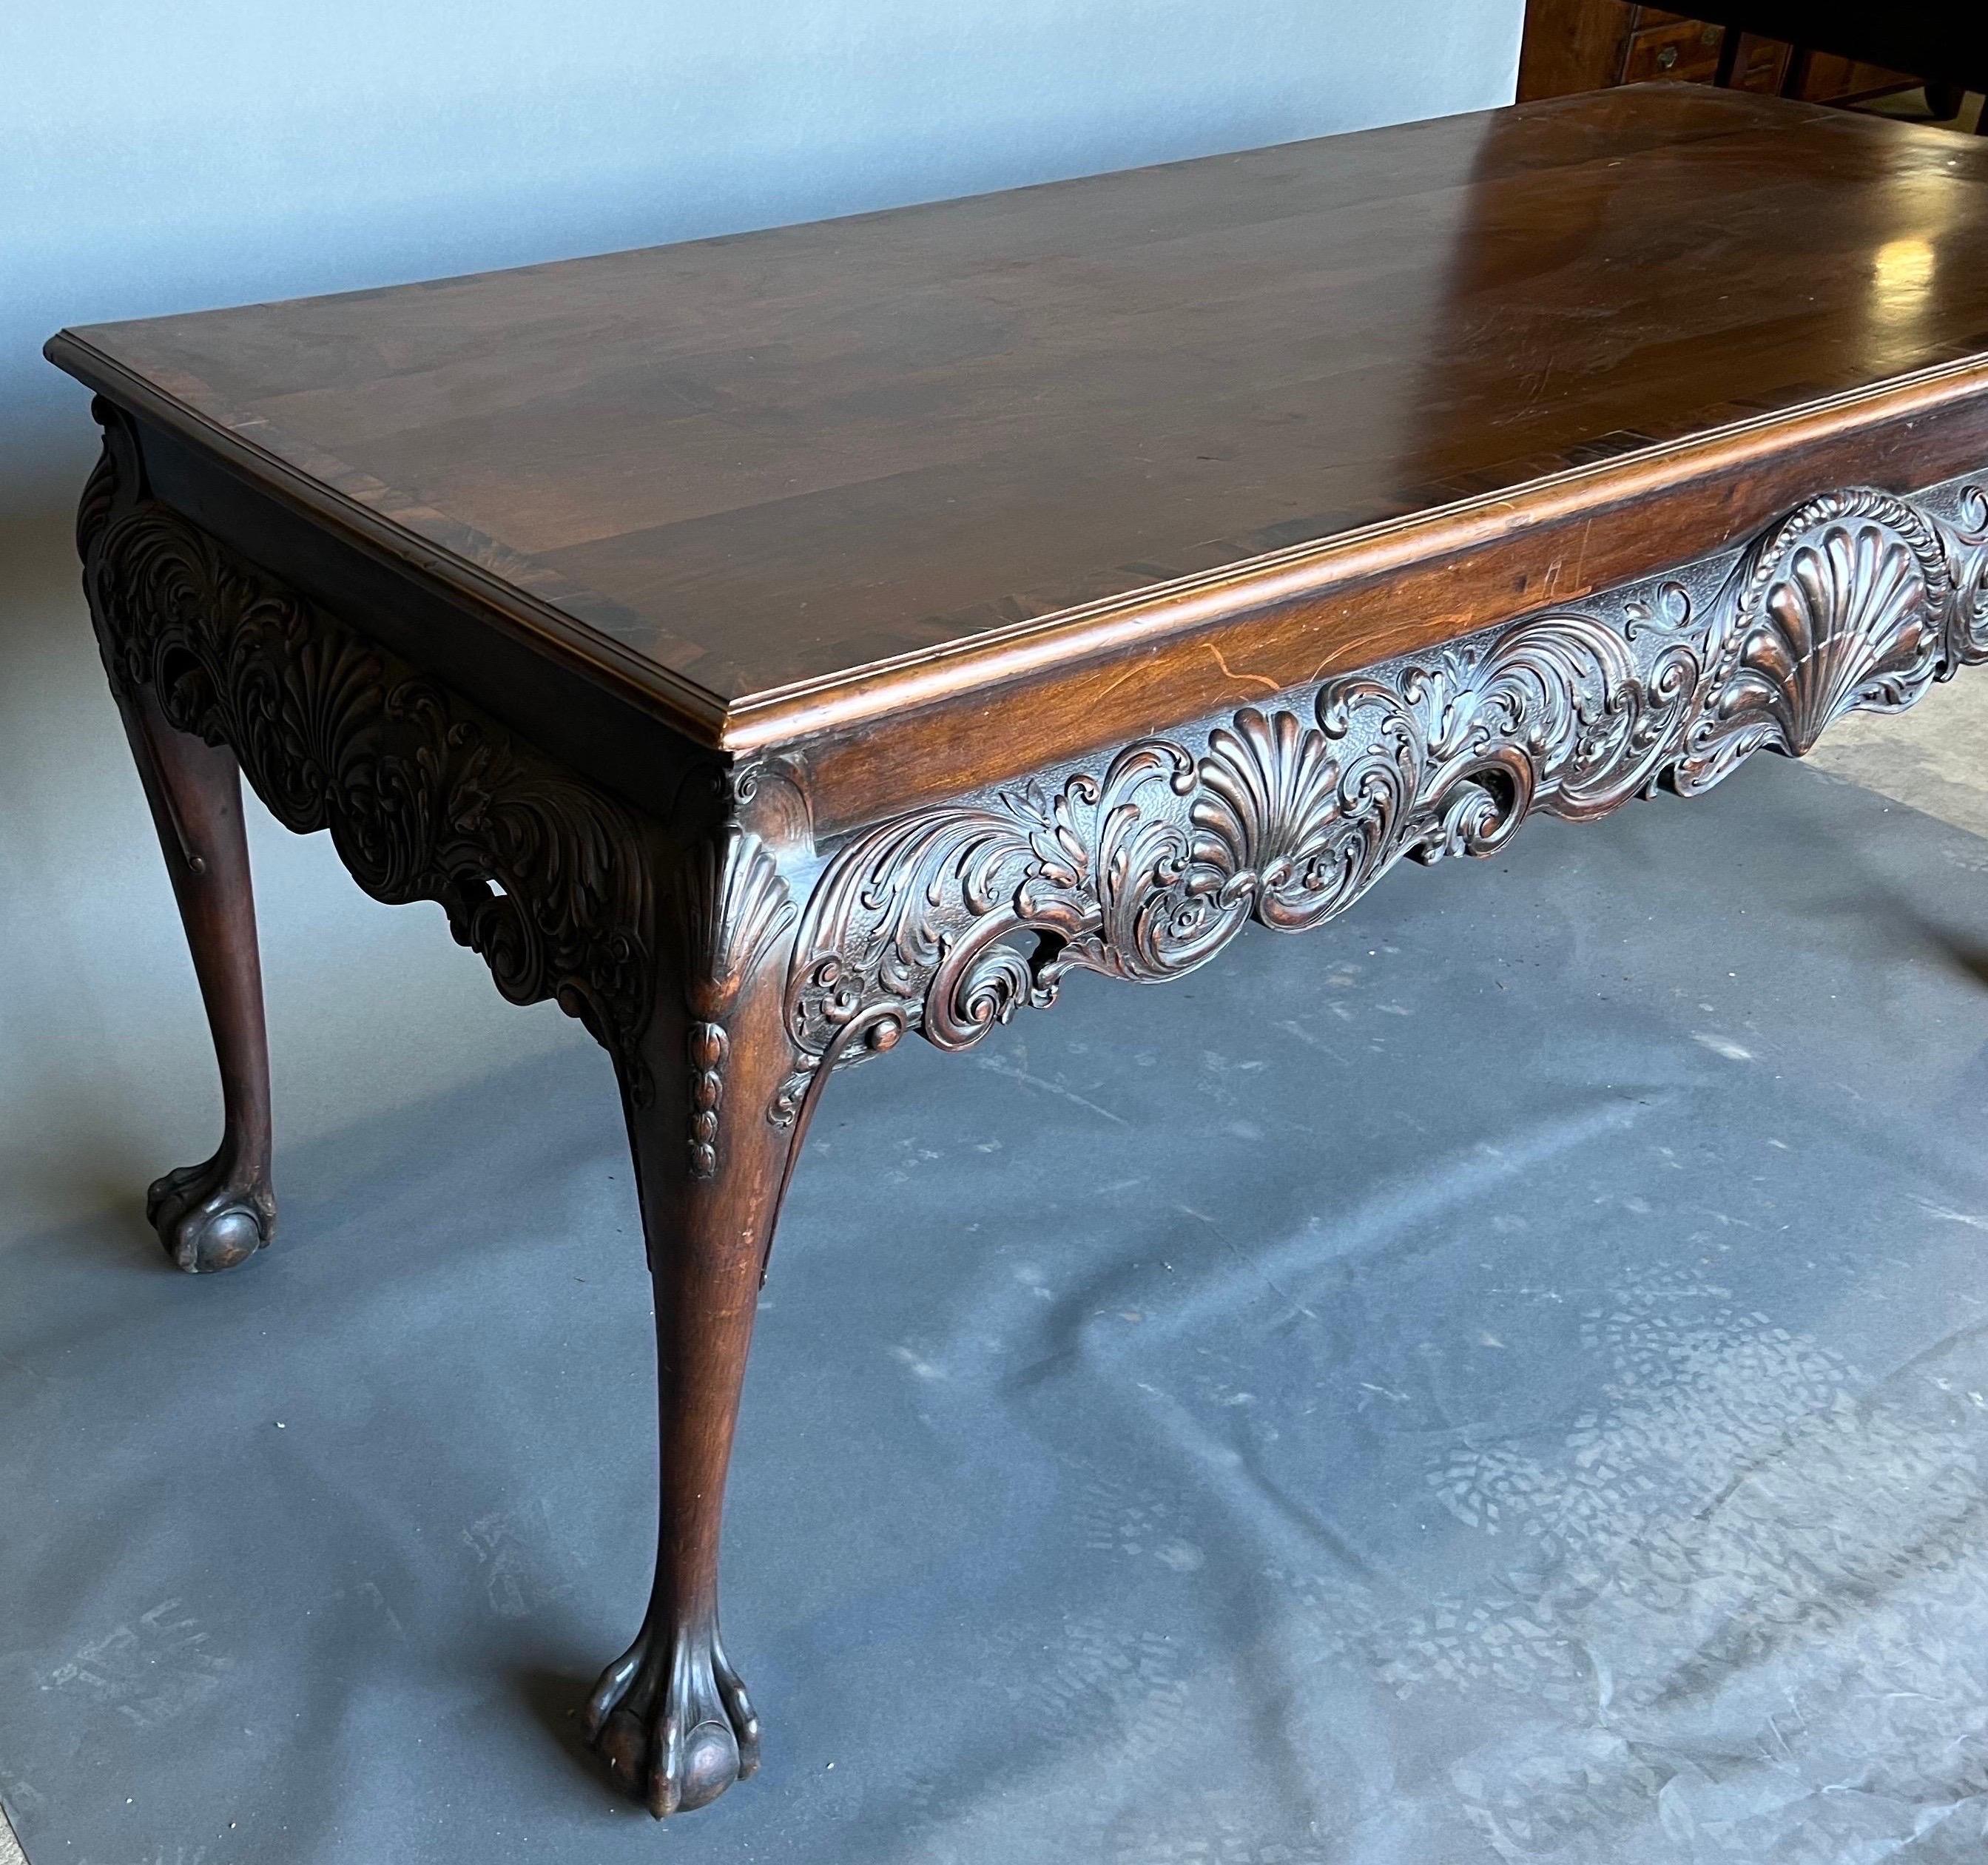 Très belle table console en acajou du 19ème siècle estampillée par Gillows. Magnifique forme et présence sur cette pièce signée Gillows. La table est en acajou à bandes croisées. Des coquilles, des feuilles d'acanthe et des plumes sculptées à la